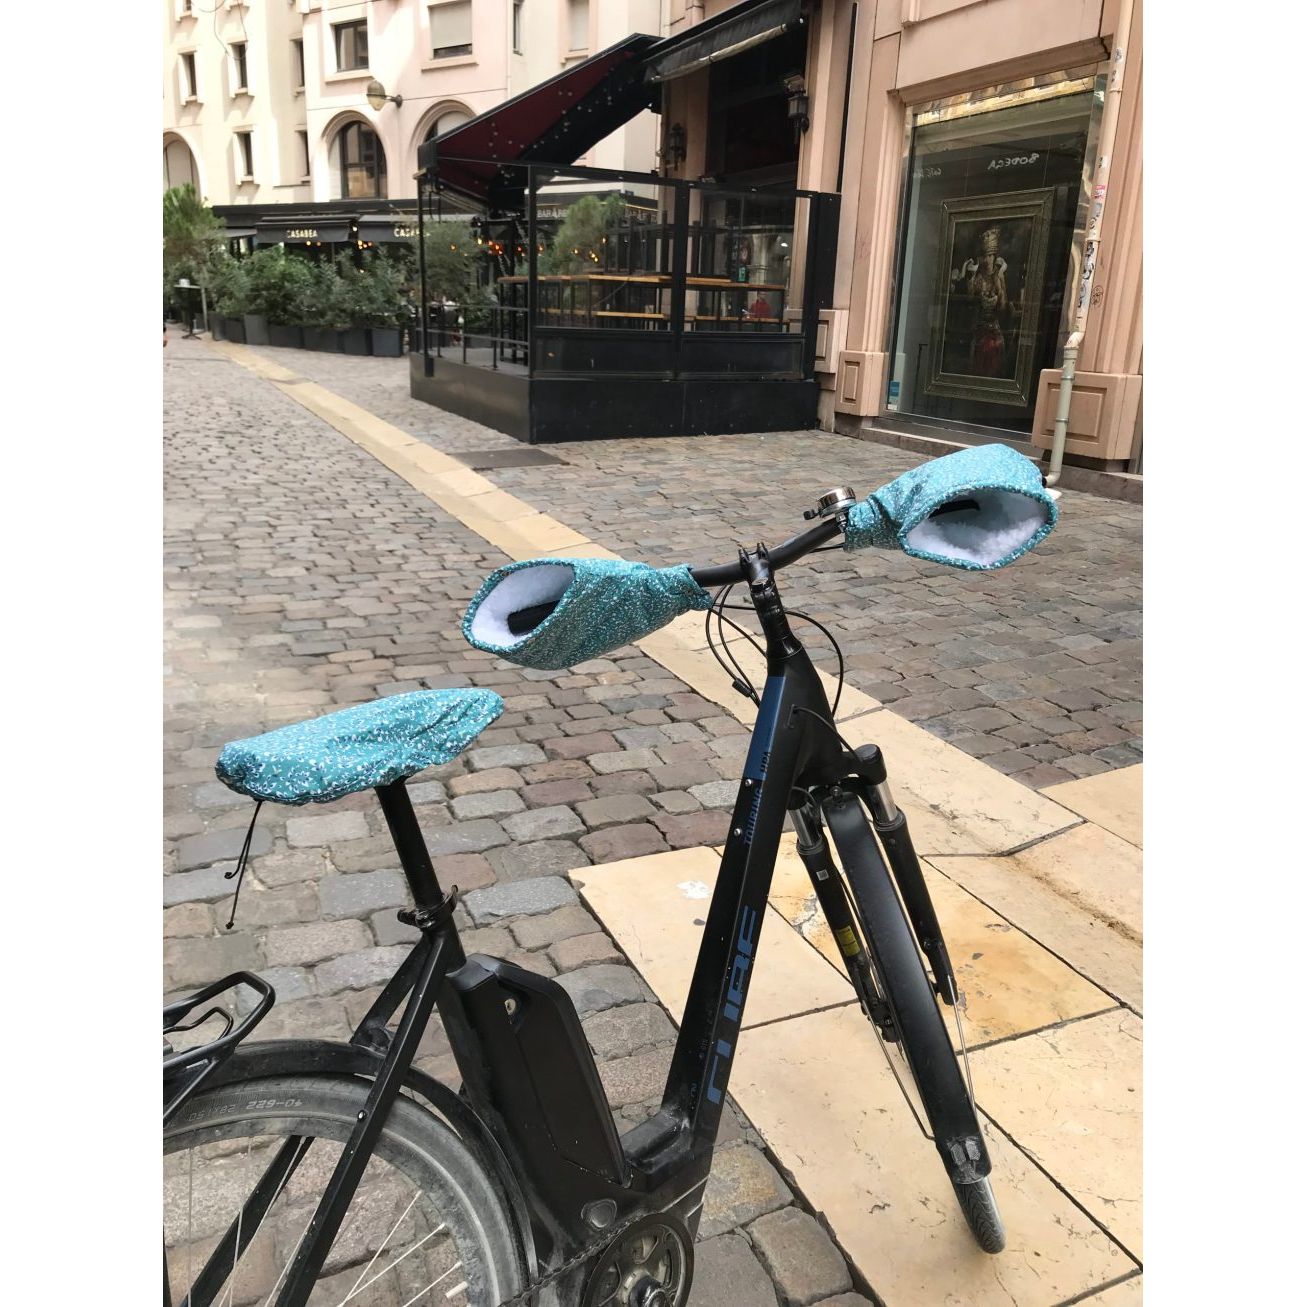 Manchons de vélo - guidon courbé - Fabriqués dans la région Lyonnaise